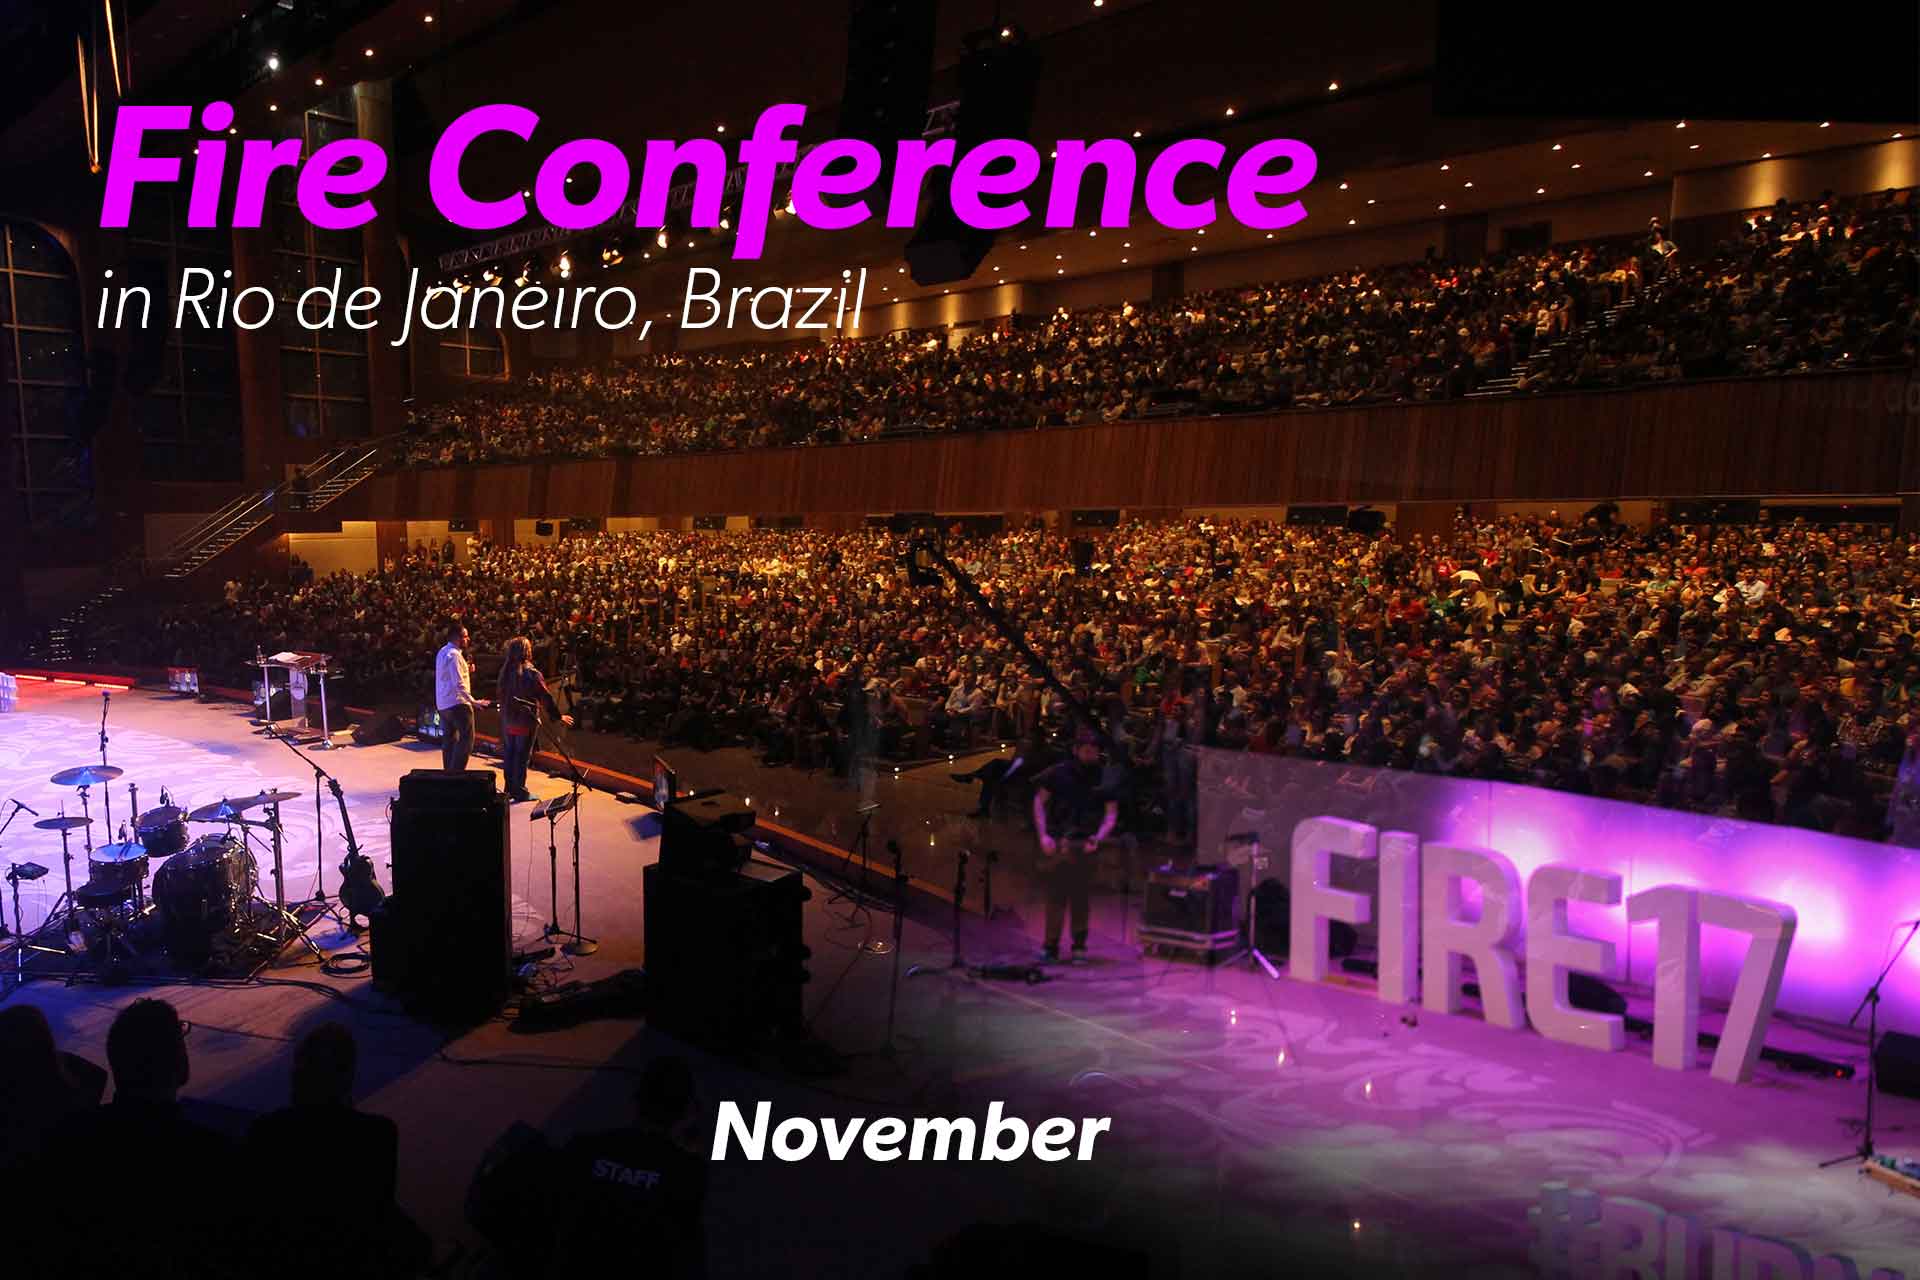 Fire Conference in Rio de Janeiro, Brazil